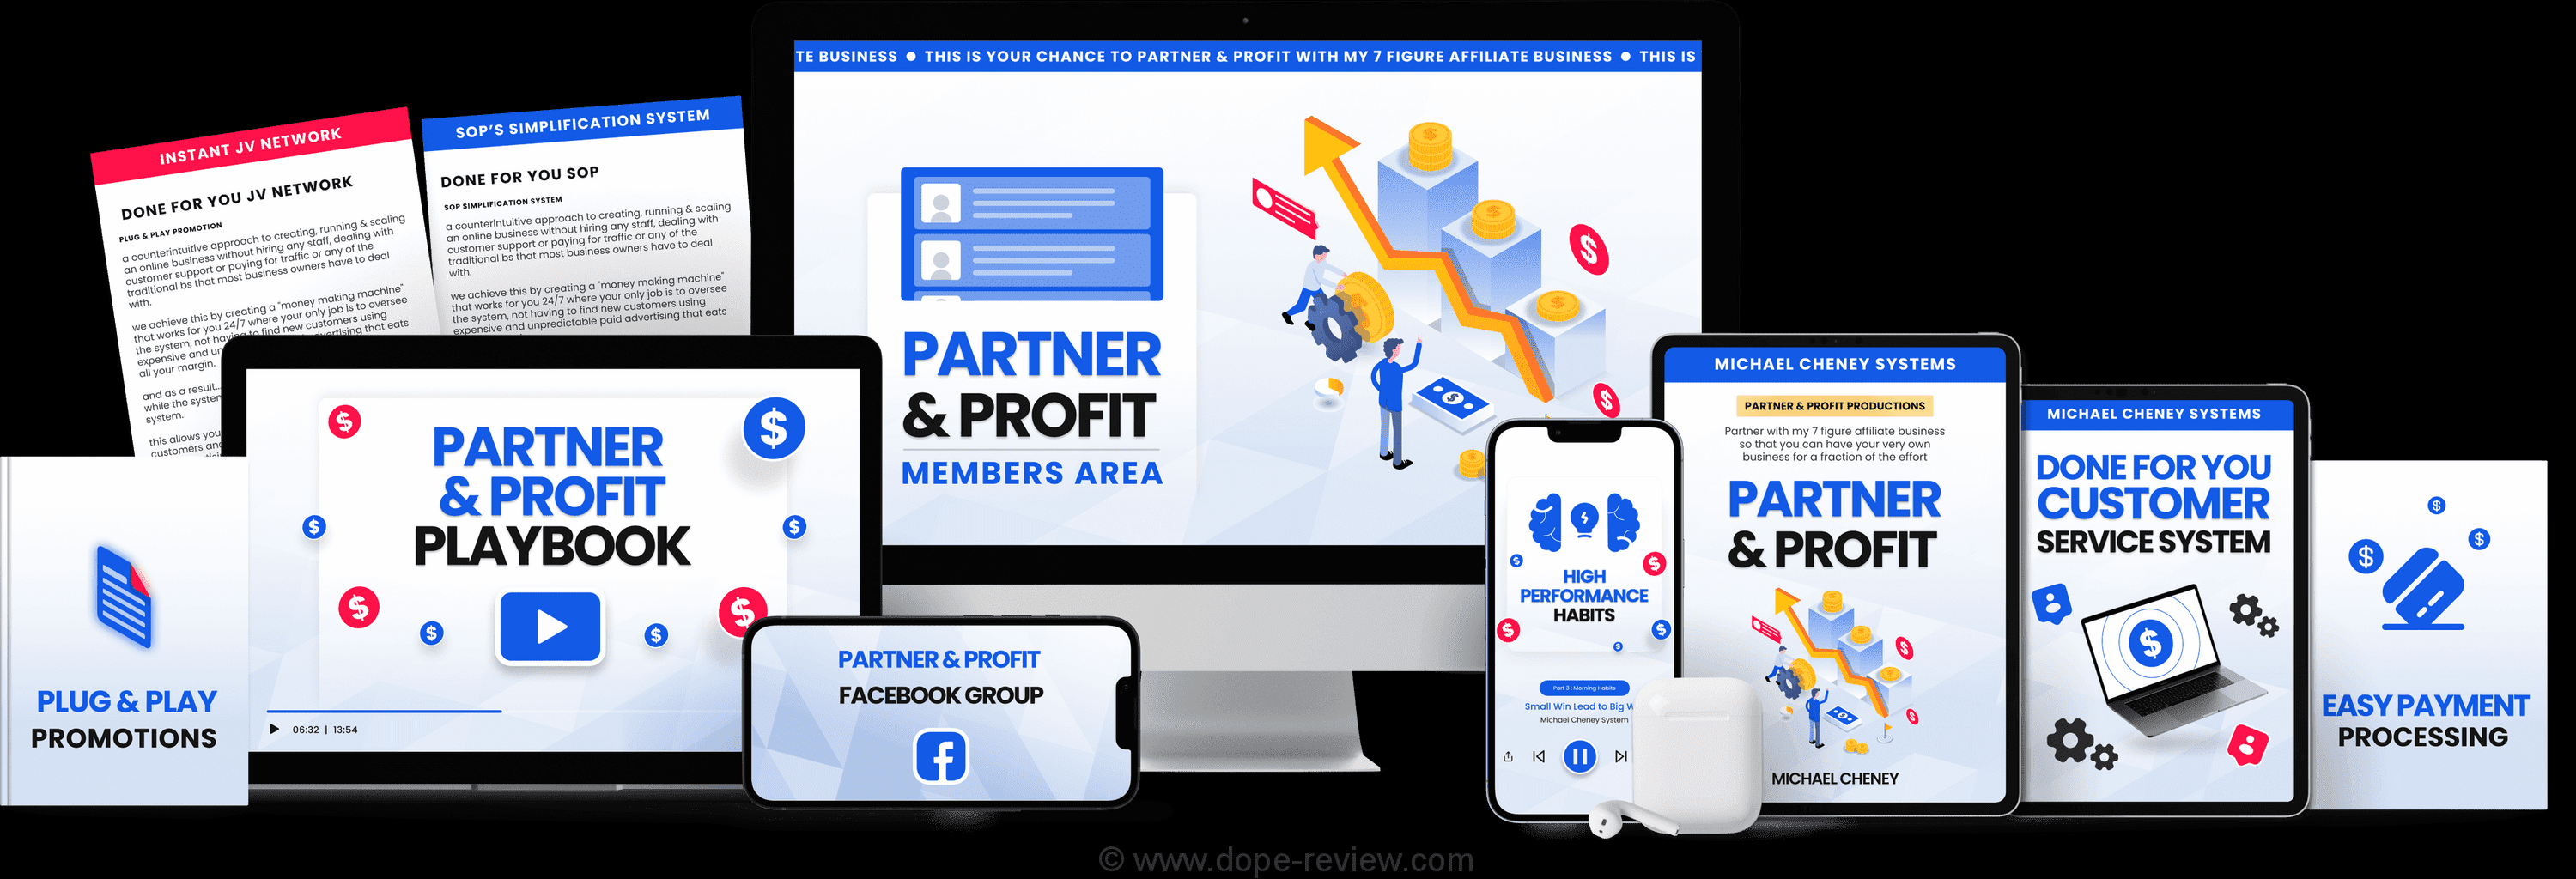 Partner & Profit Review